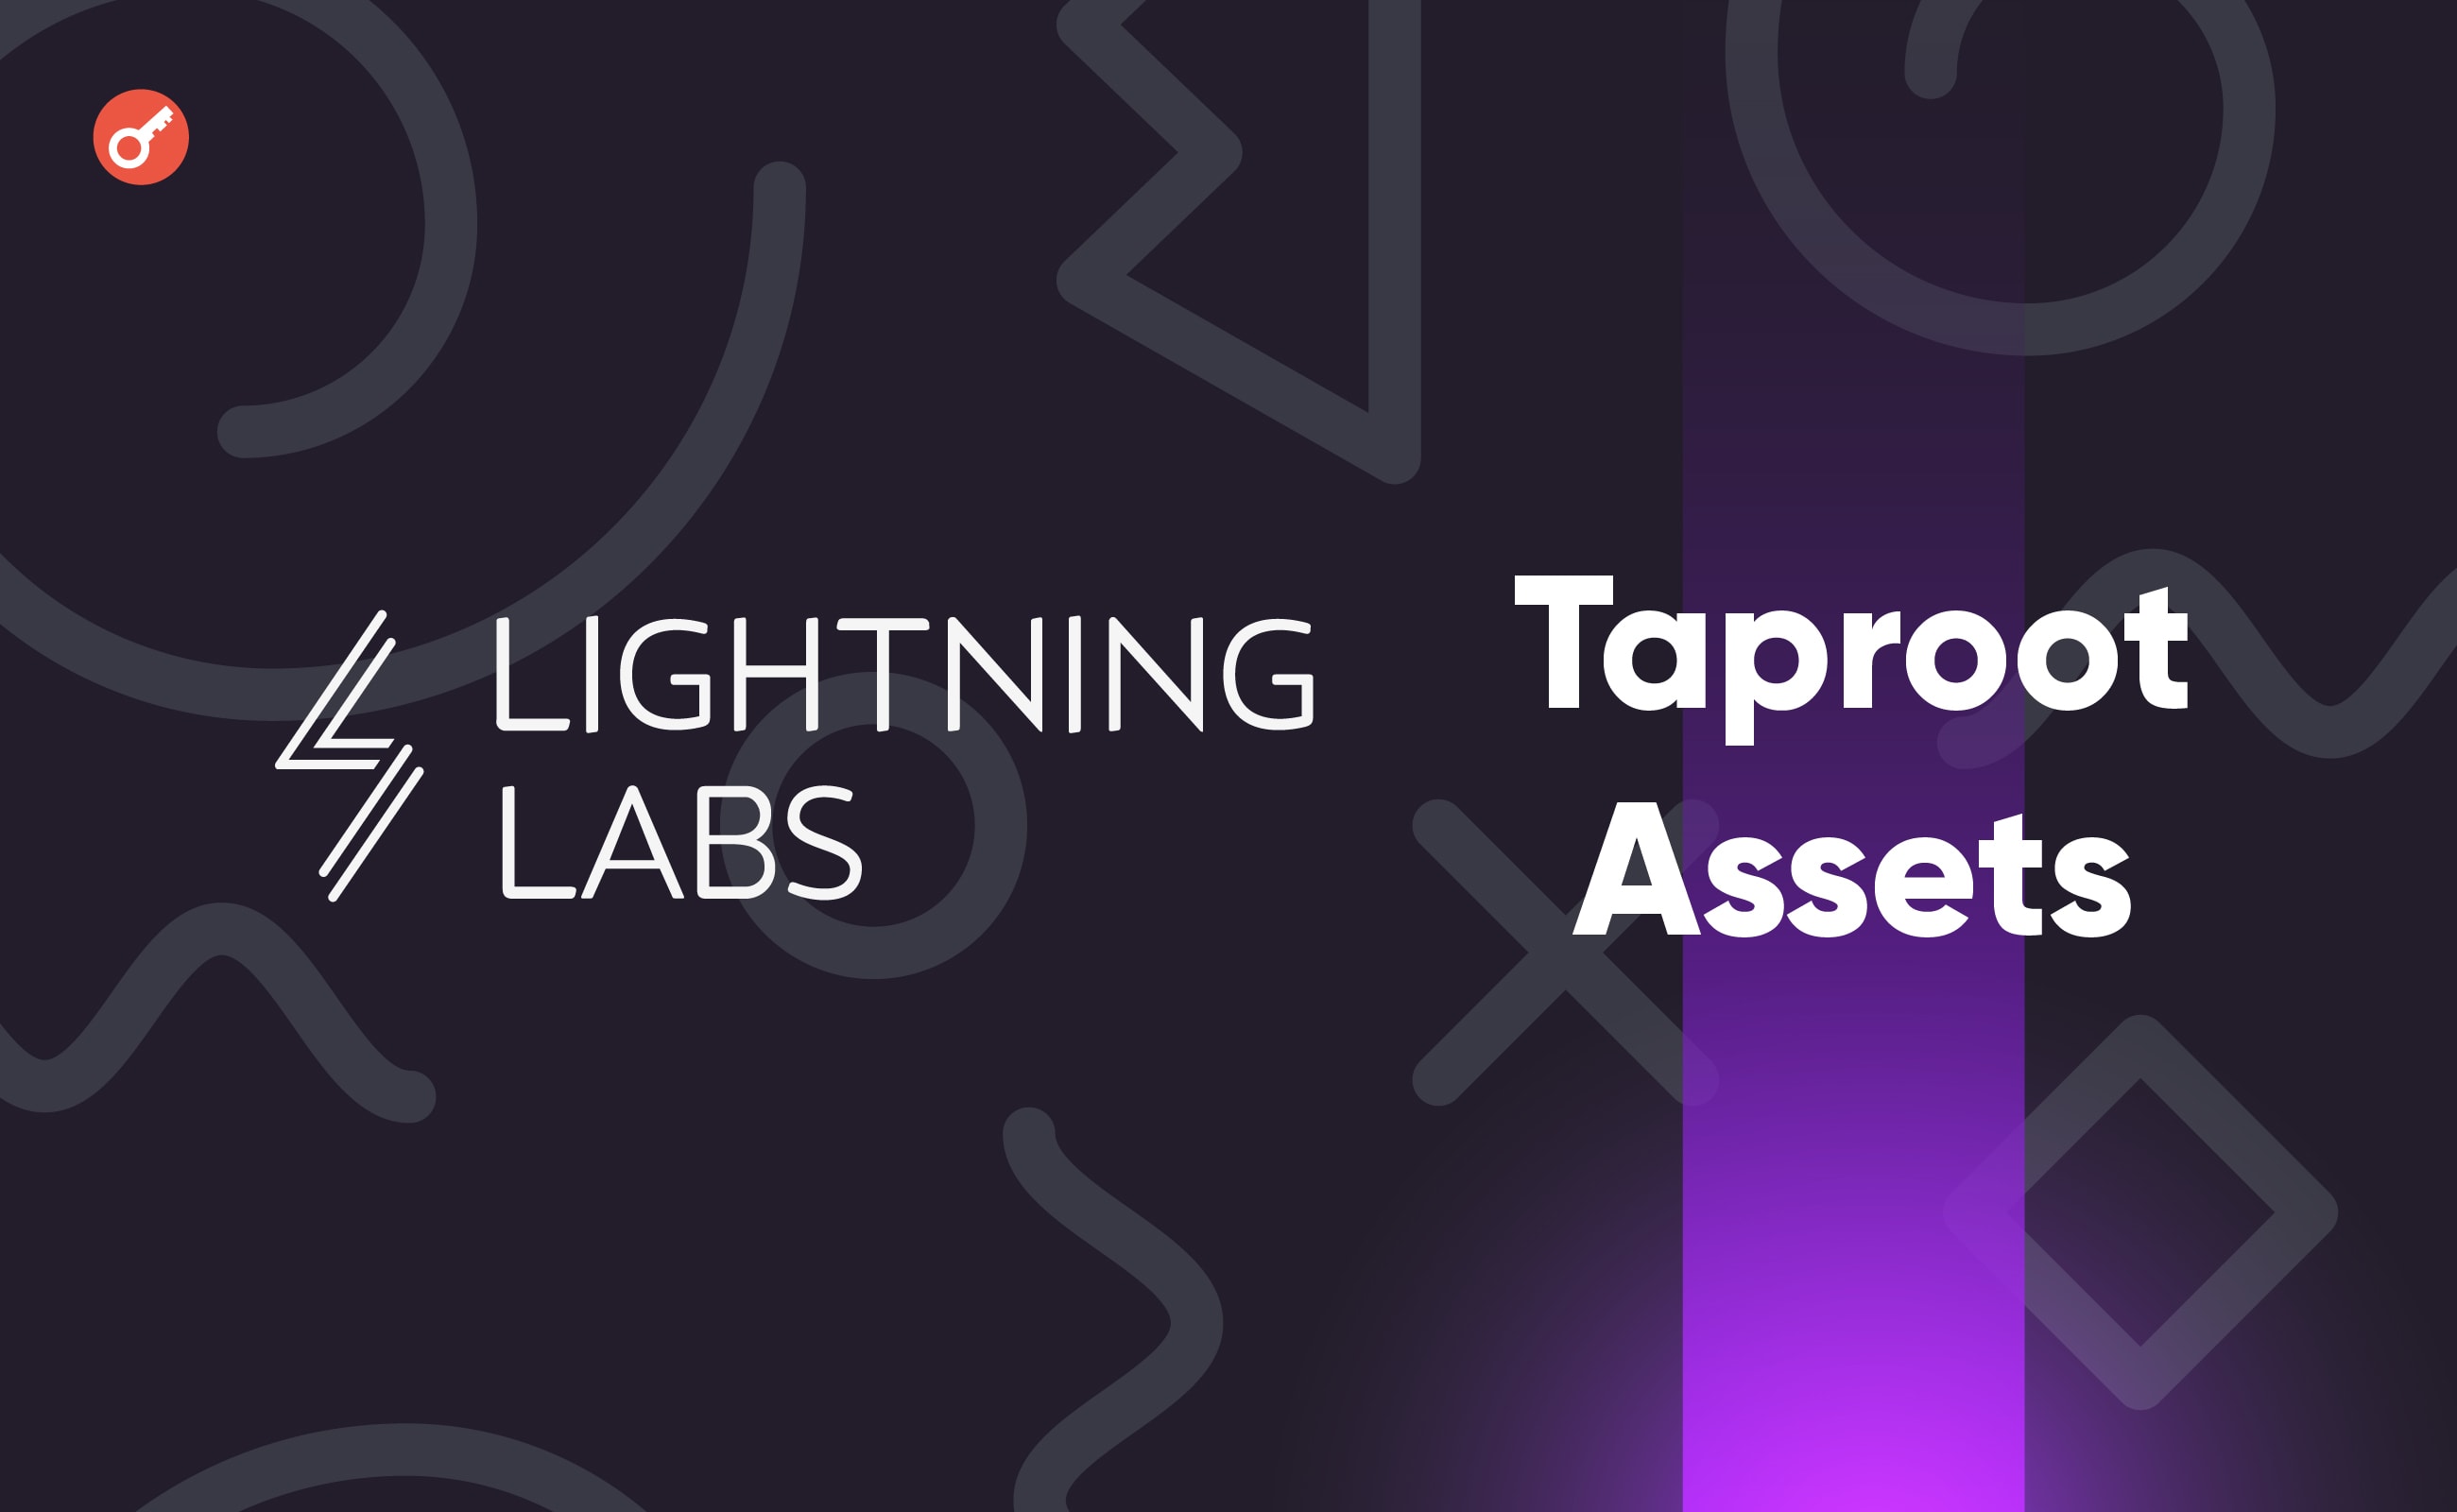 Lightning Labs запустила альфа-версию протокола Taproot Assets. Заглавный коллаж новости.